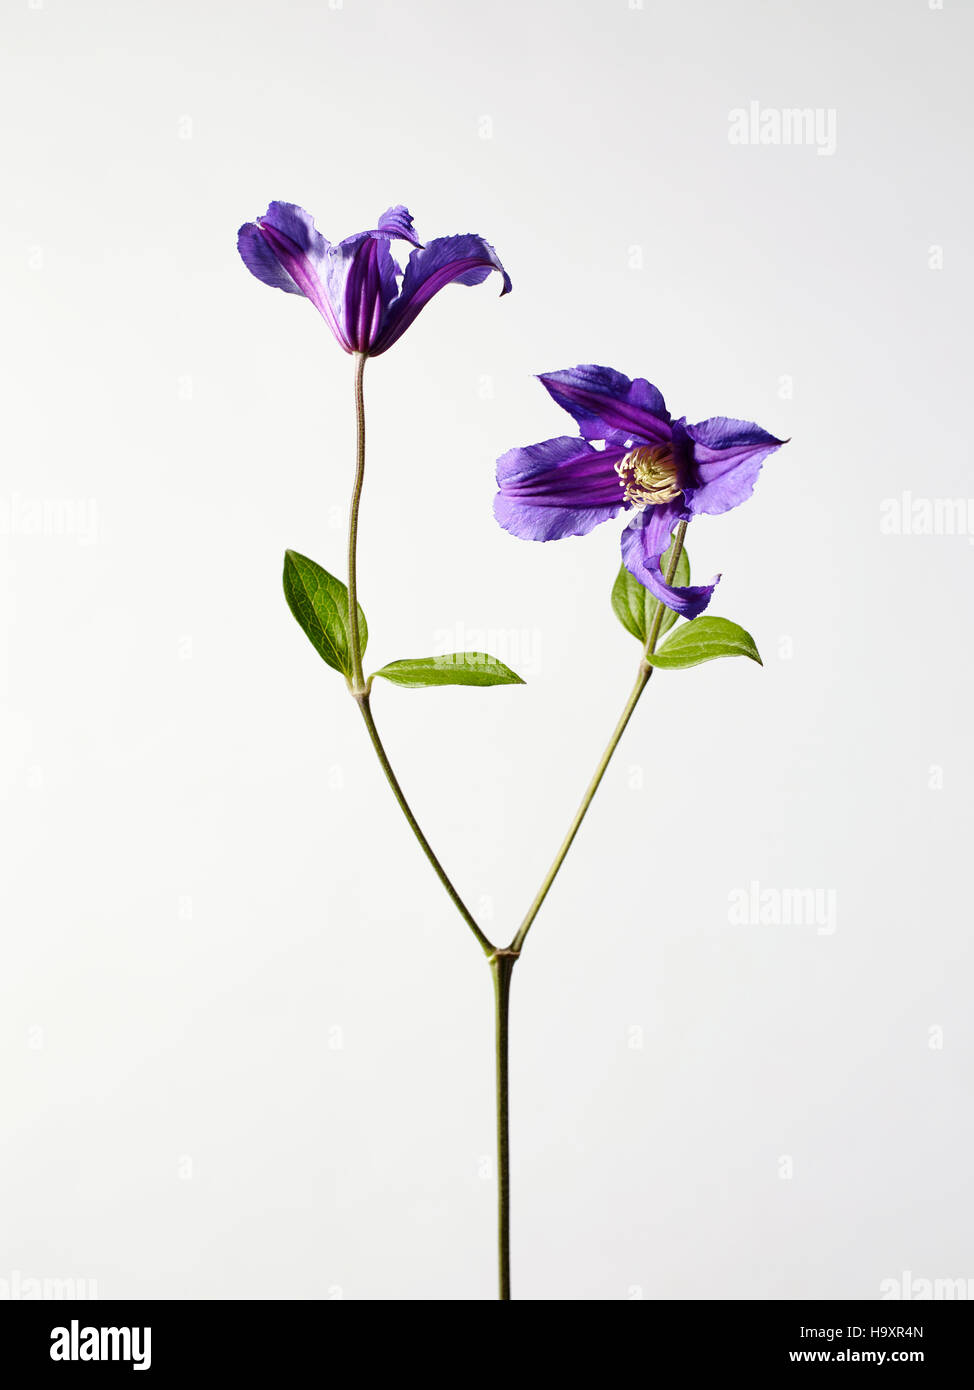 Still Life studio photographie de fleurs clématite pourpre deux têtes de fleurs, pétales de couleur vive en fleur Banque D'Images